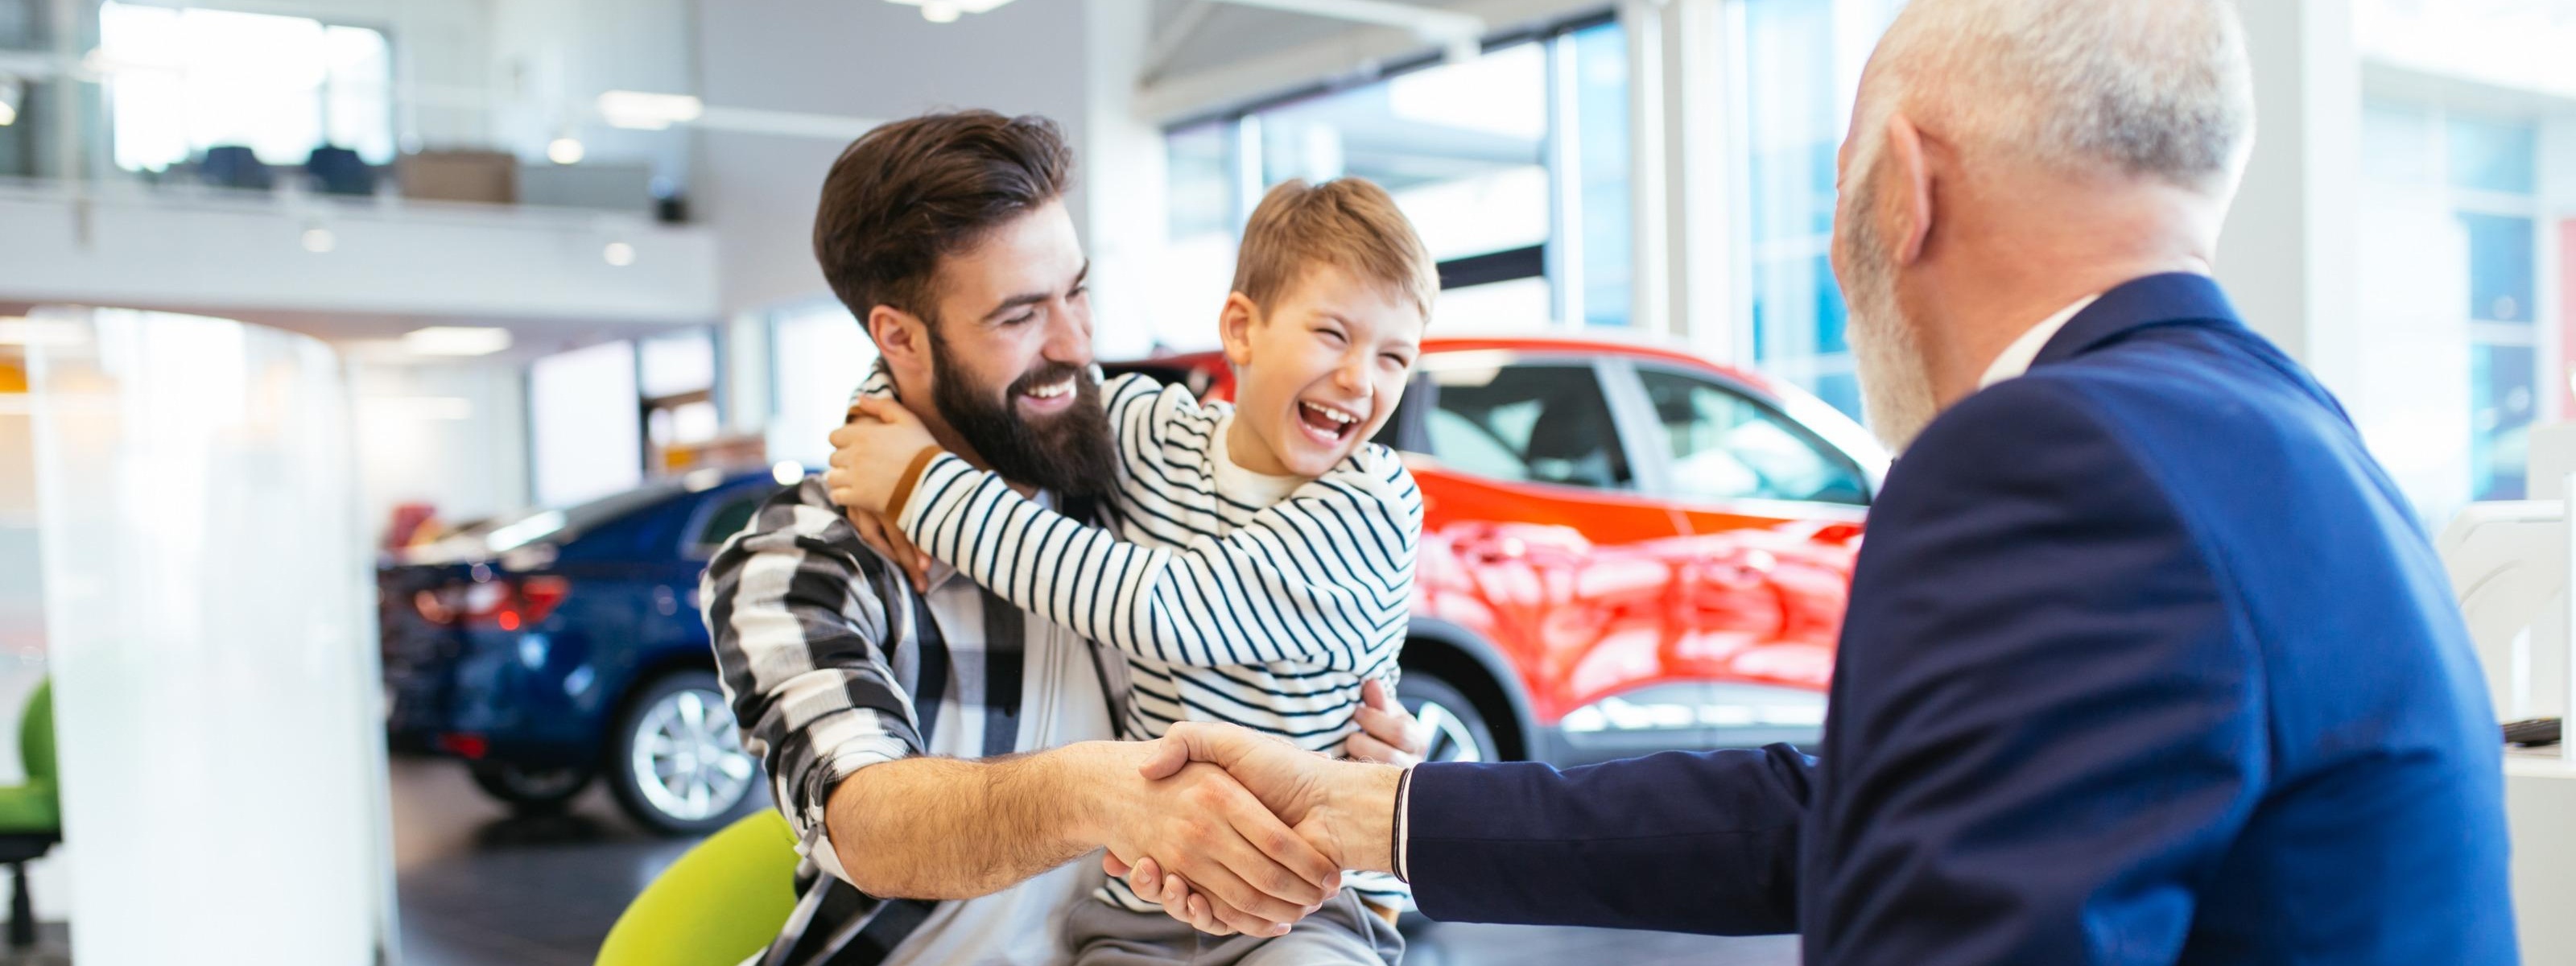 Person mit lachendem Kind am Schoß schüttelt weiterer Person am Tisch sitzend die Hand, im Hintergrund Autos